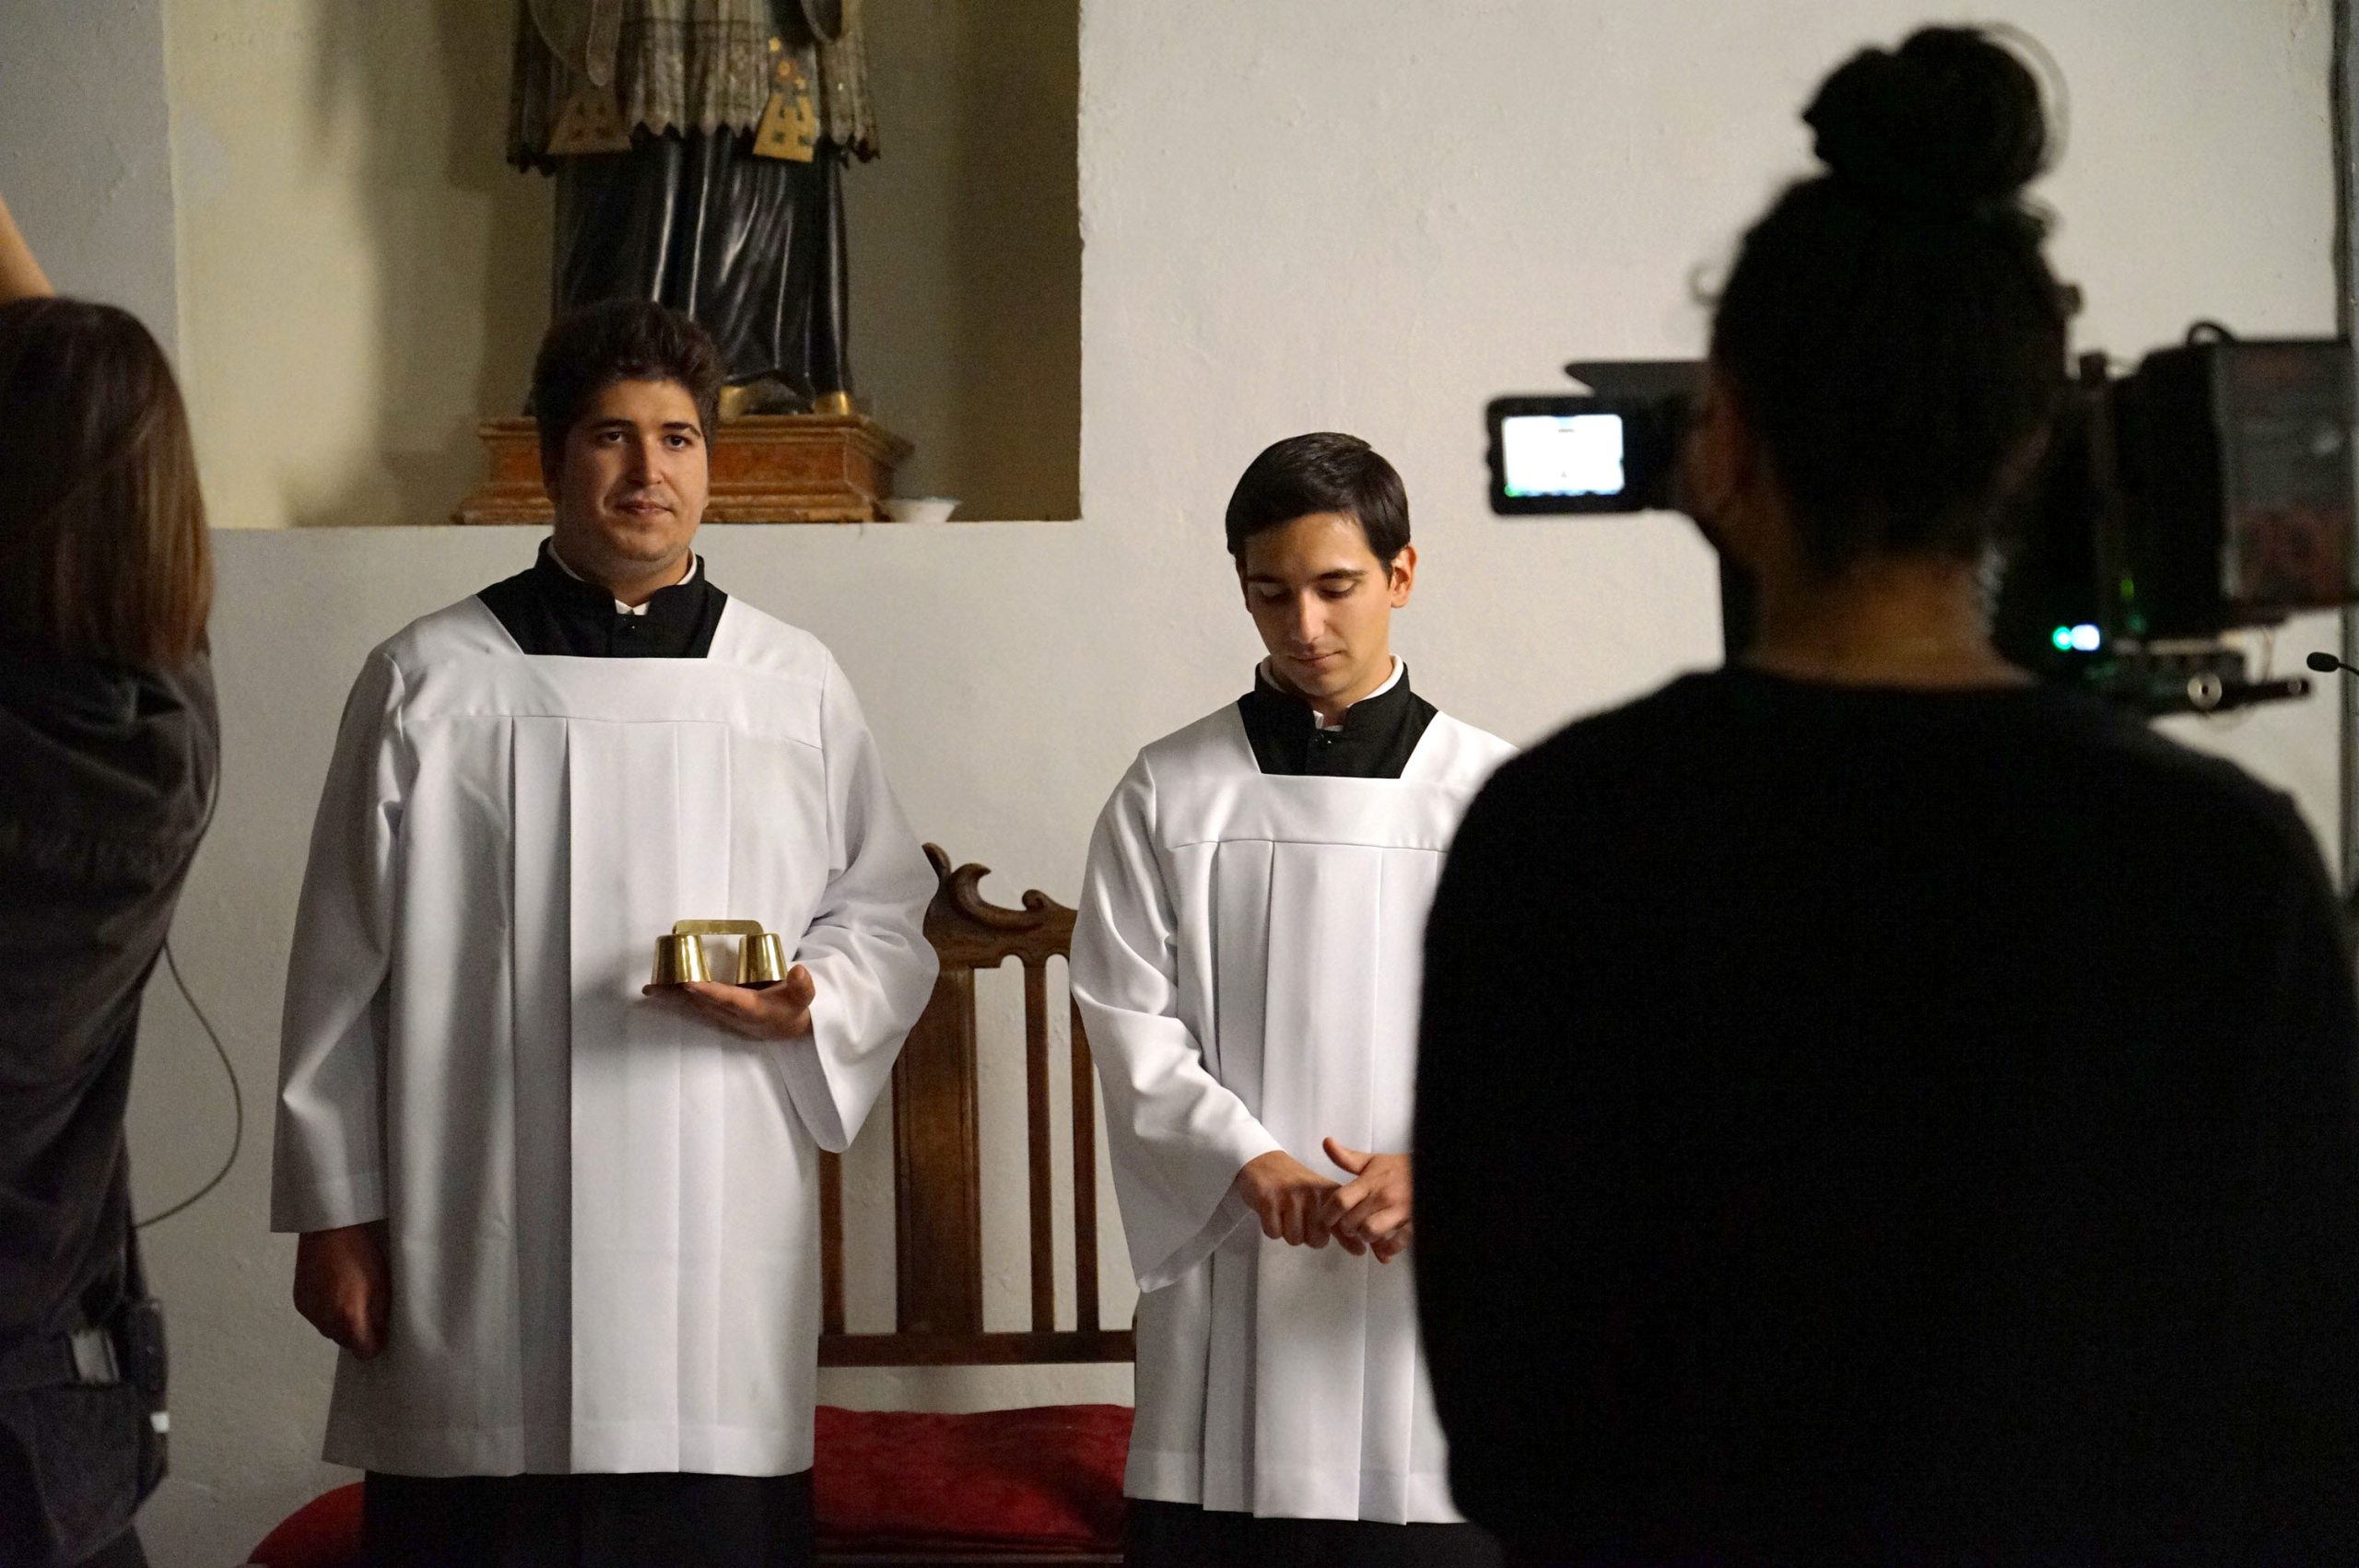 Bubión hosts the shooting of “El Mártir”, a project by Cologne Film School